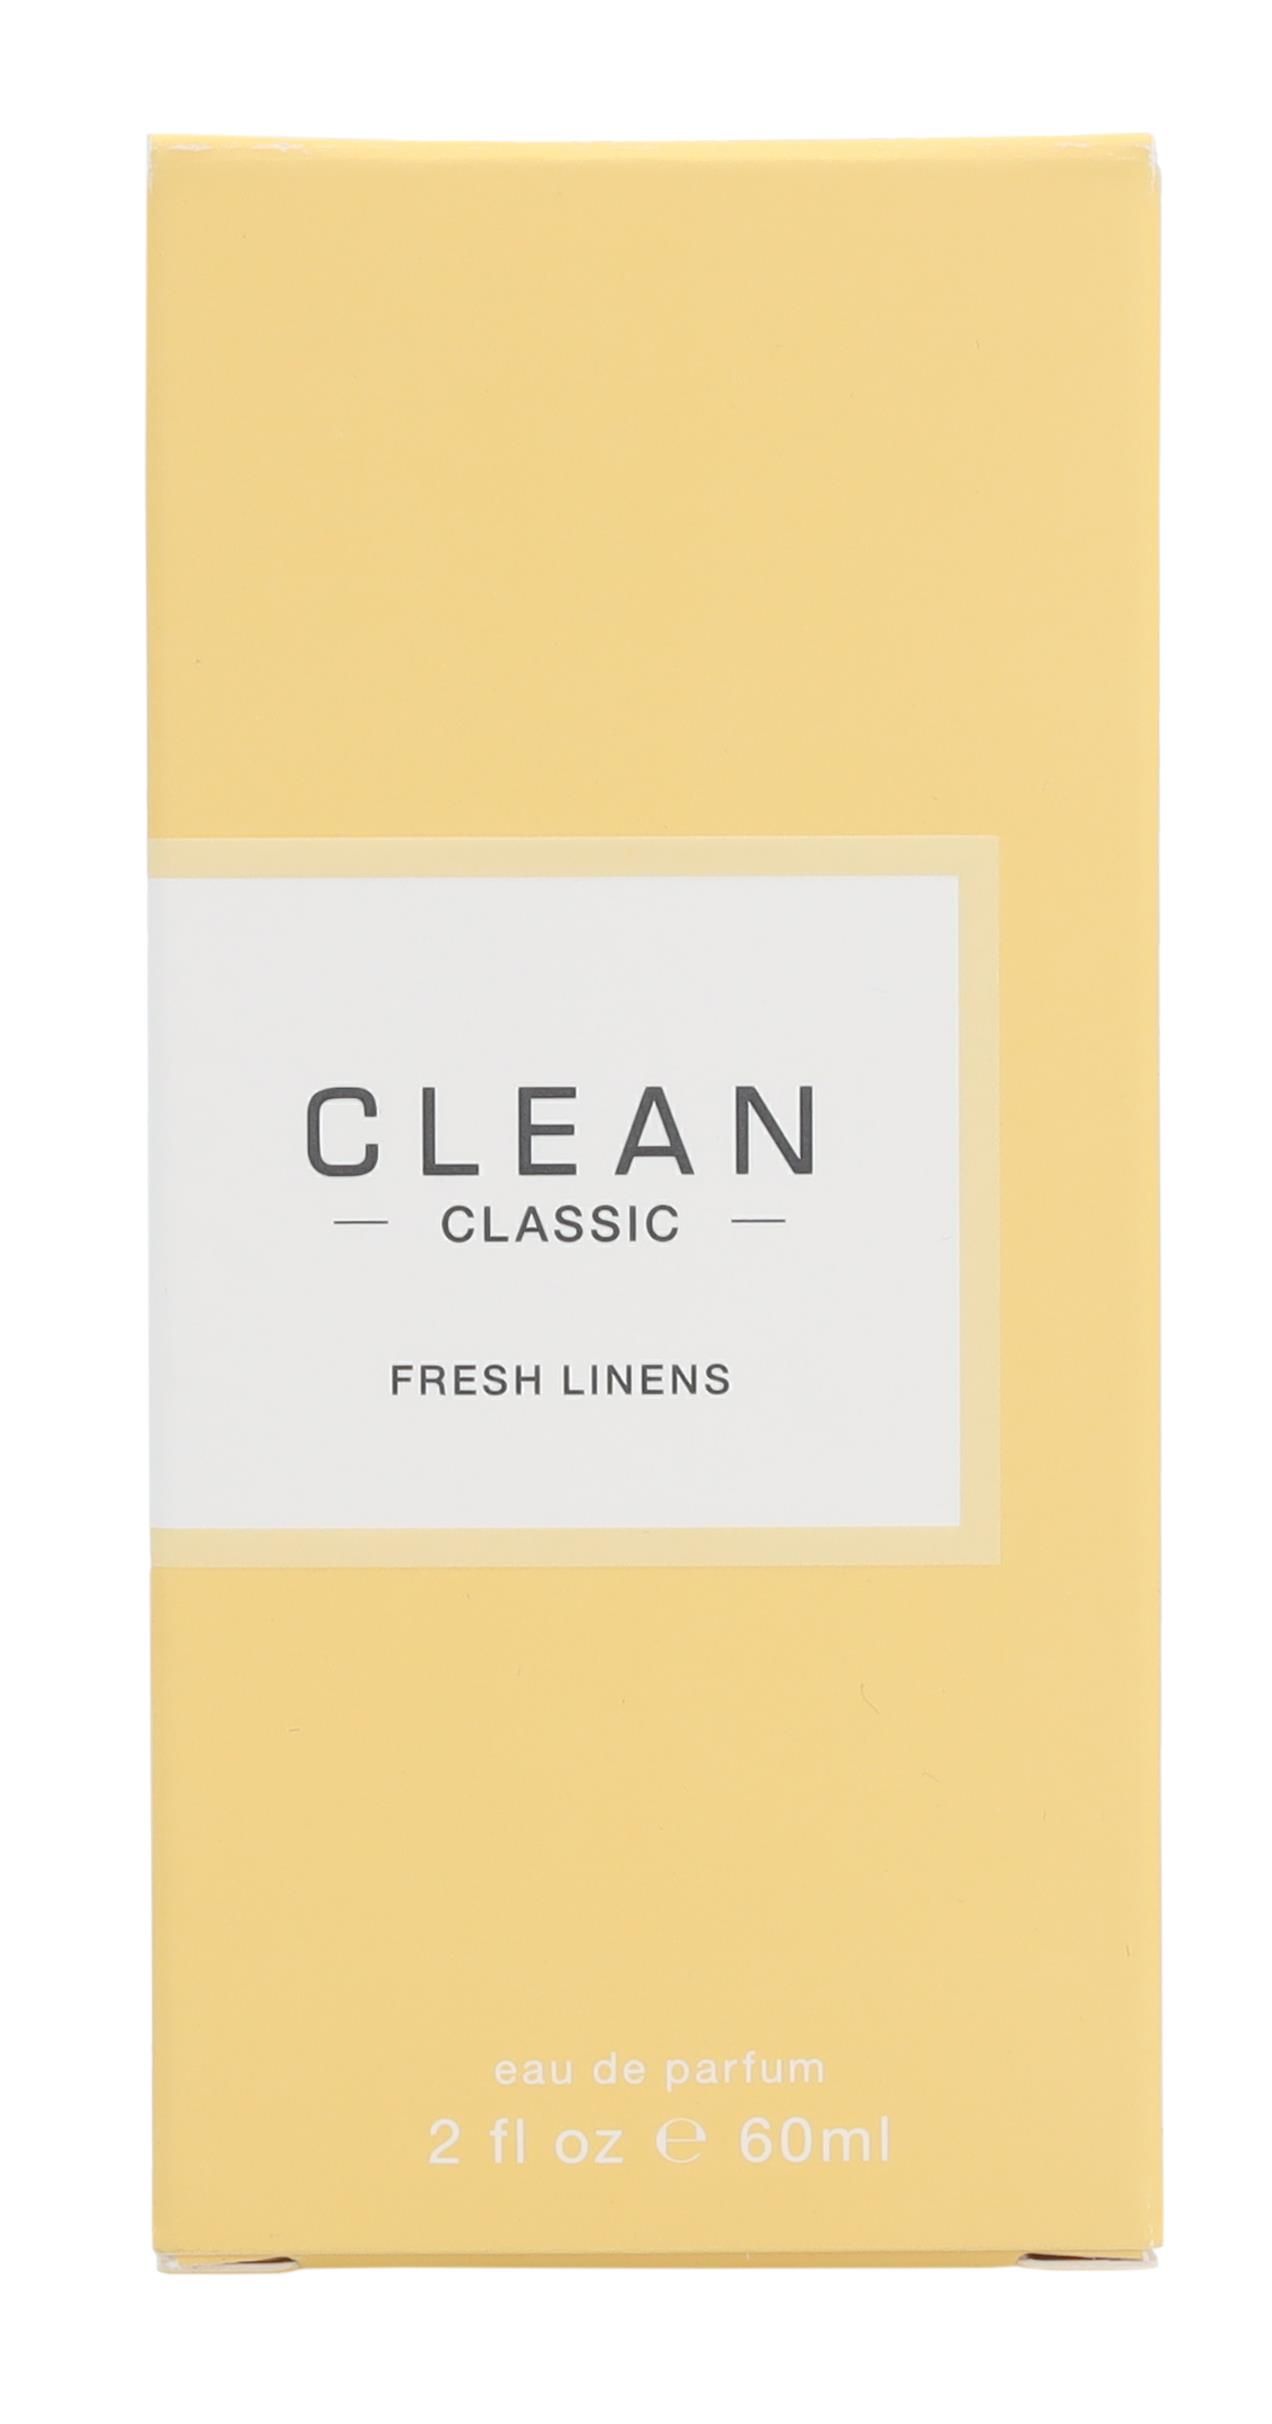 Clean Fresh Linens Edp Spray 60ml